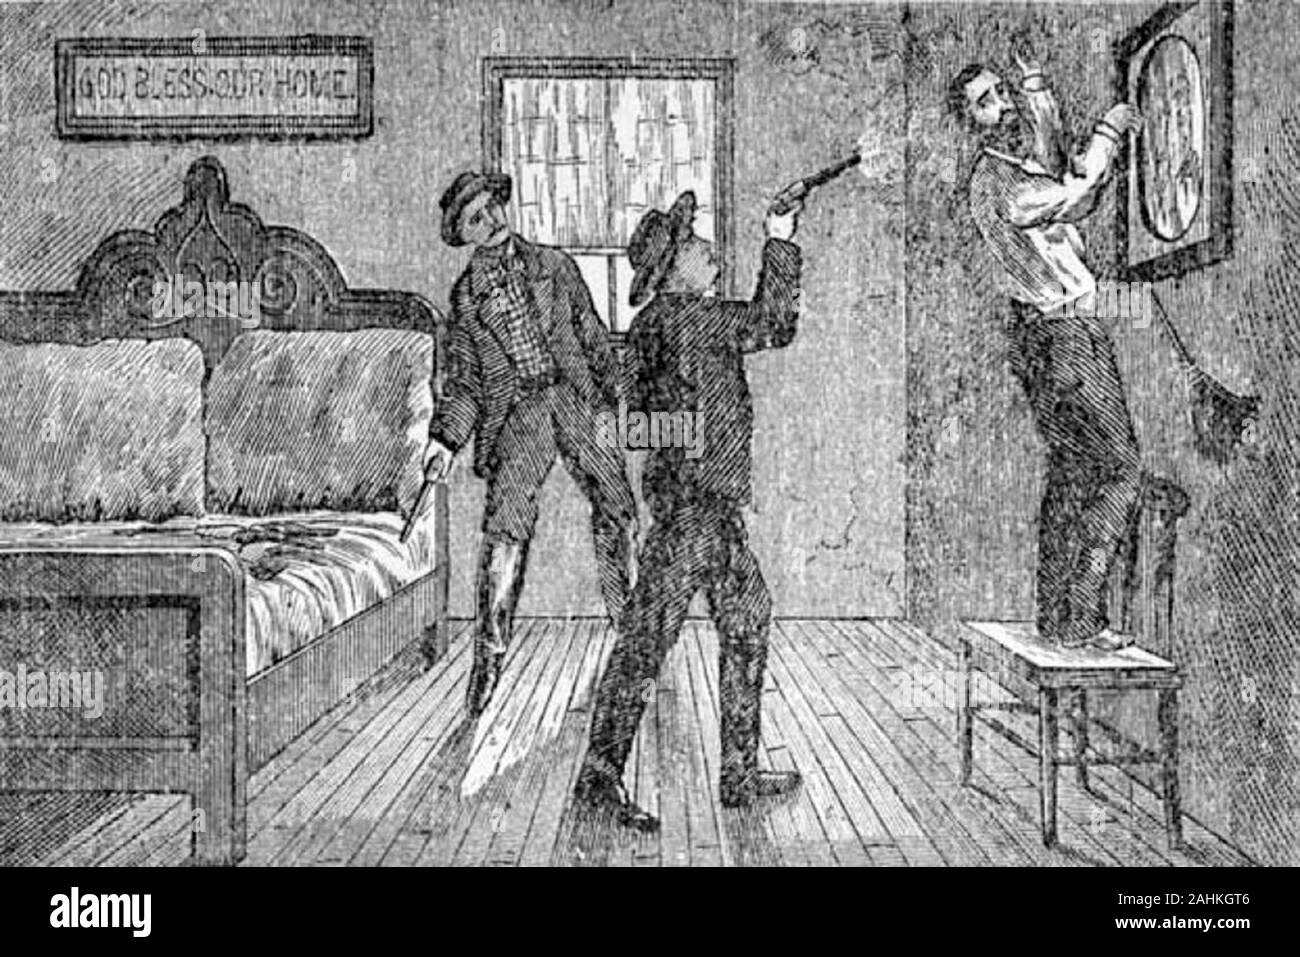 Abbildung: Robert Ford berühmt schießen Jesse James in den Rücken, während er ein Bild in seinem Haus hängt. Ford's Bruder Charles schaut auf Stockfoto